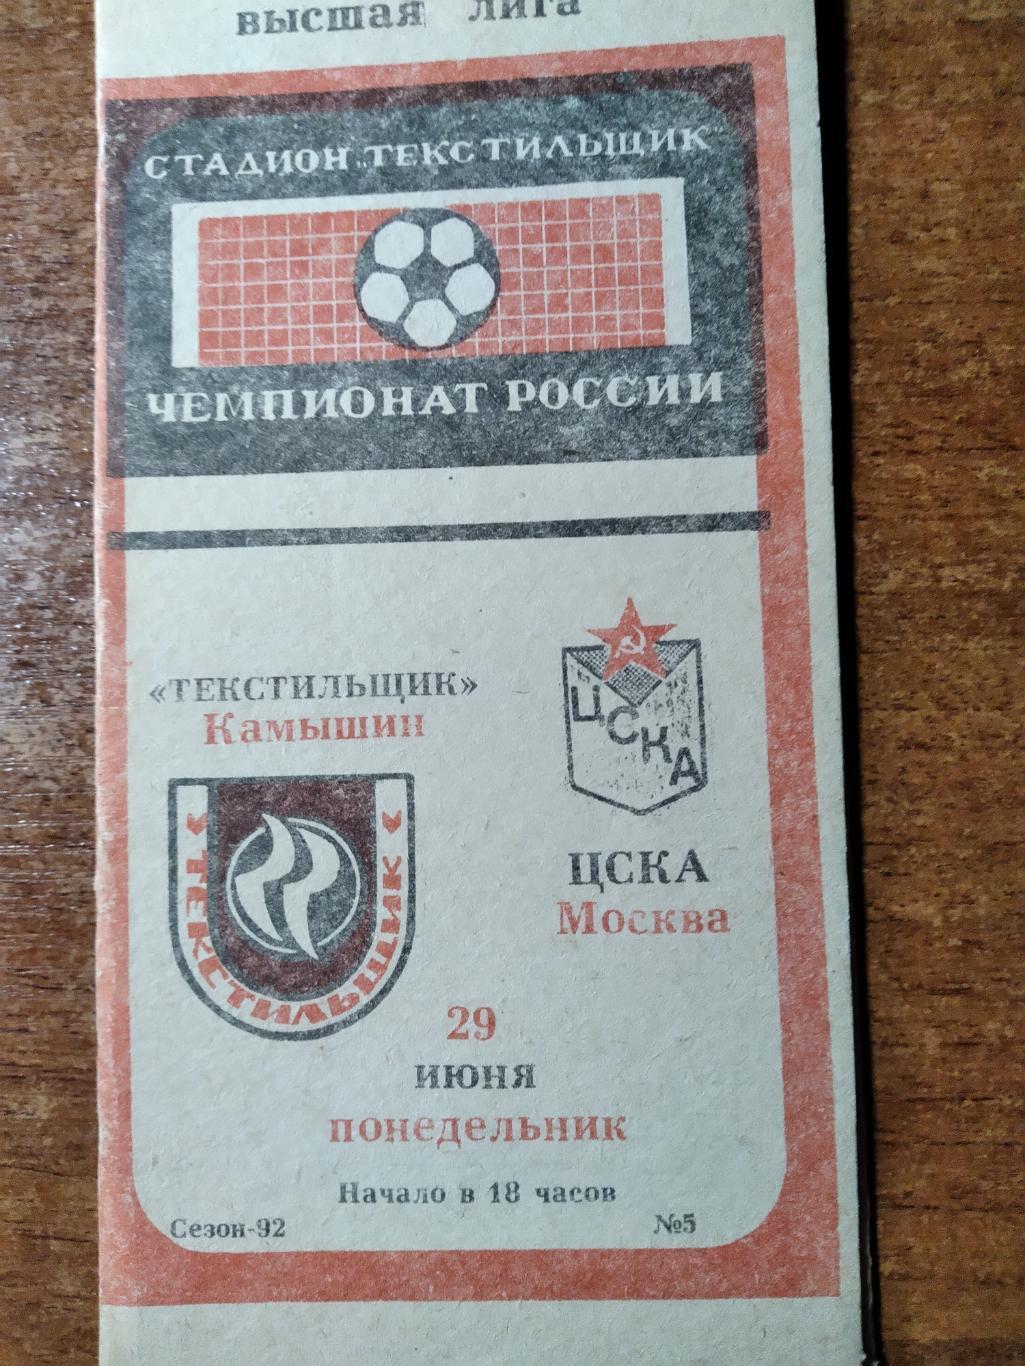 ПрограммаТекстильщик(Камыш ин)- ЦСКА(Москва) ВЛ ЧР 1992г.